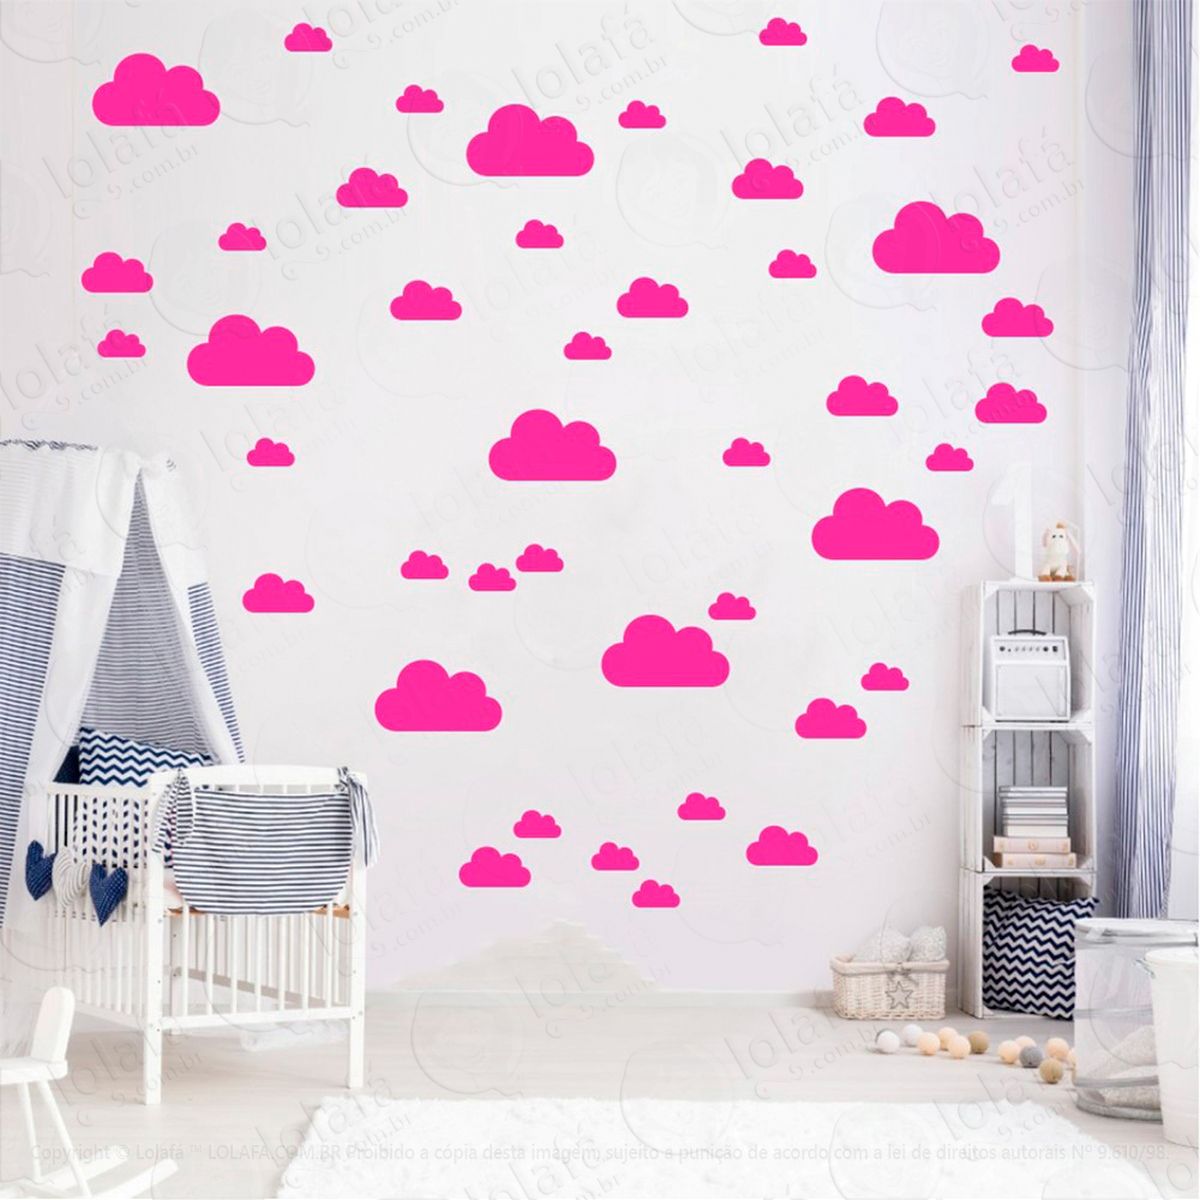 adesivos nuvens 78 peças adesivos para quarto de bebê infantil - mod:774